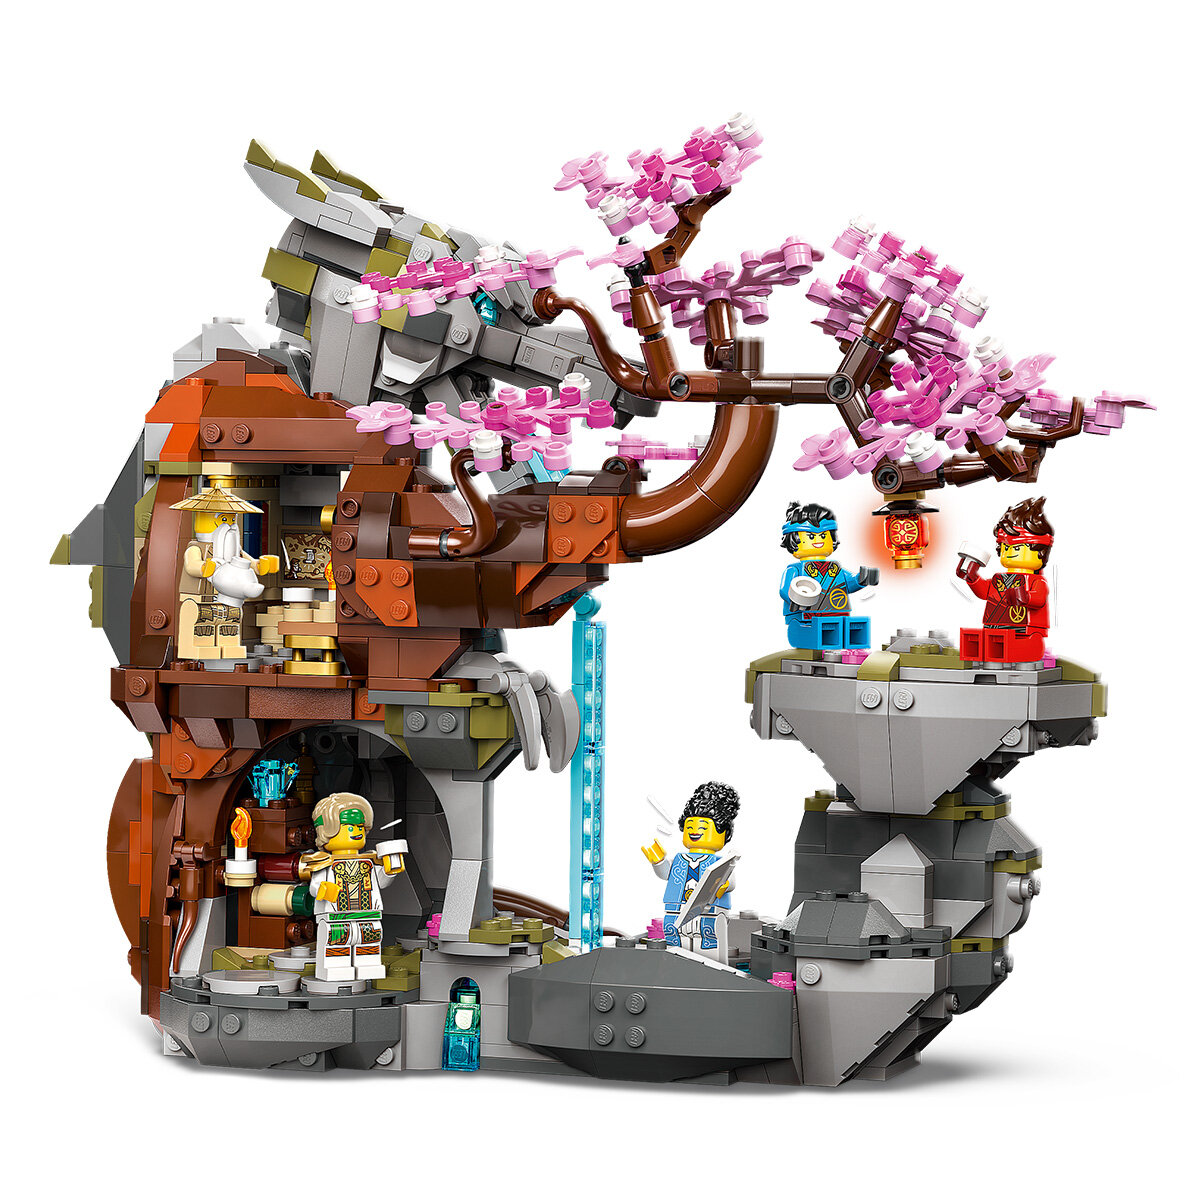 Buy LEGO Ninjango Item Image at Costco.co.uk